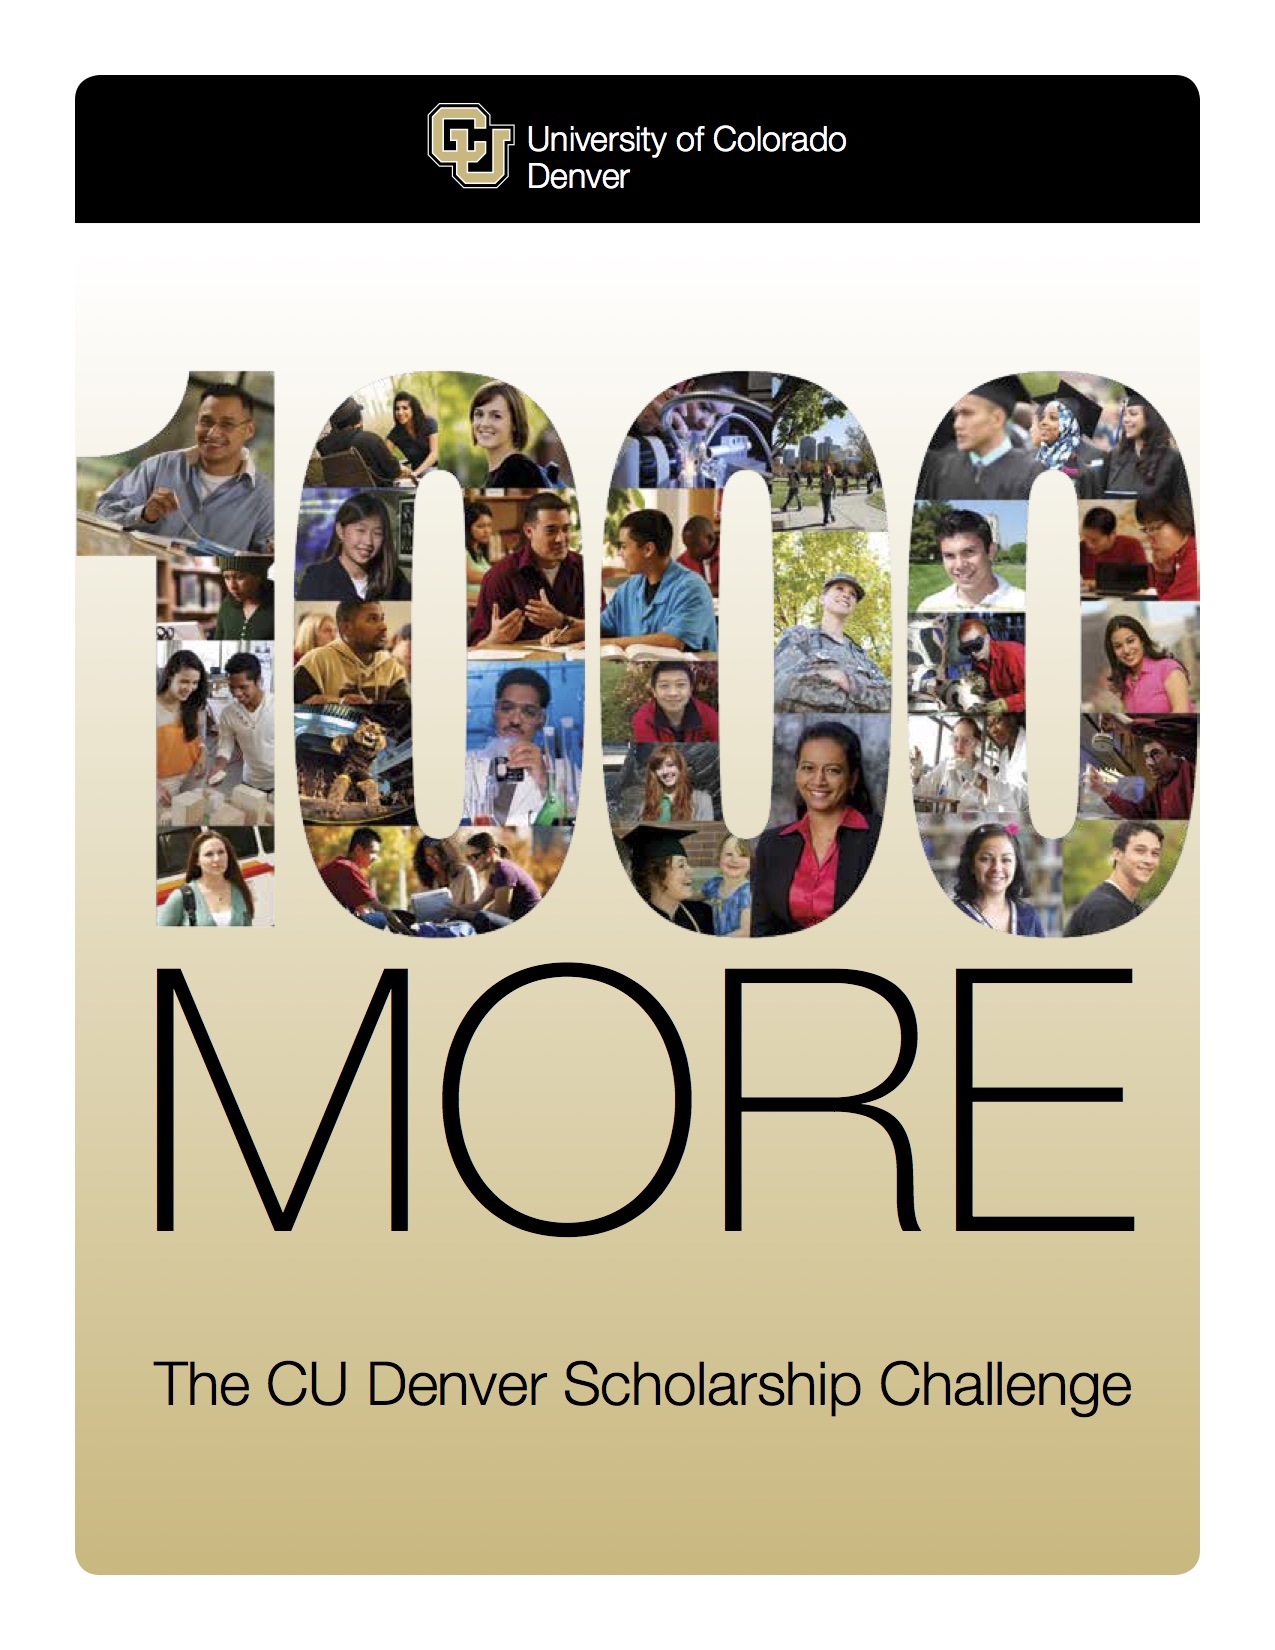 Scholarships at CU Denver